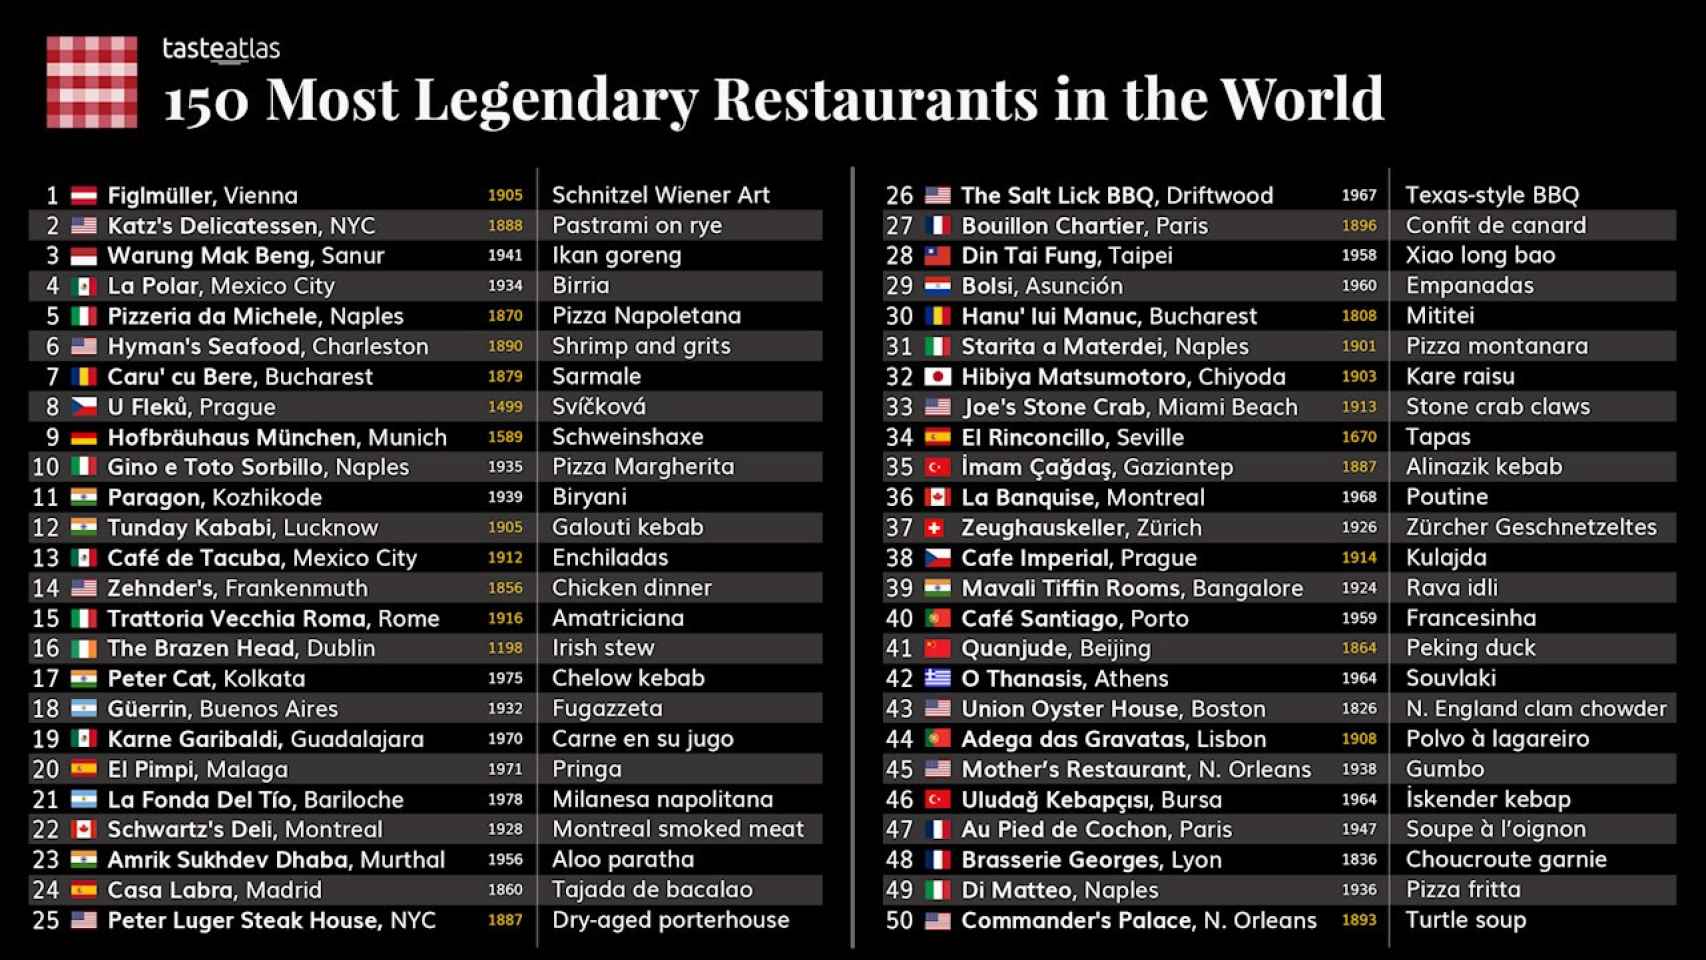 Listado de los 150 restaurantes más legendarios en el mundo según Taste Atlas.